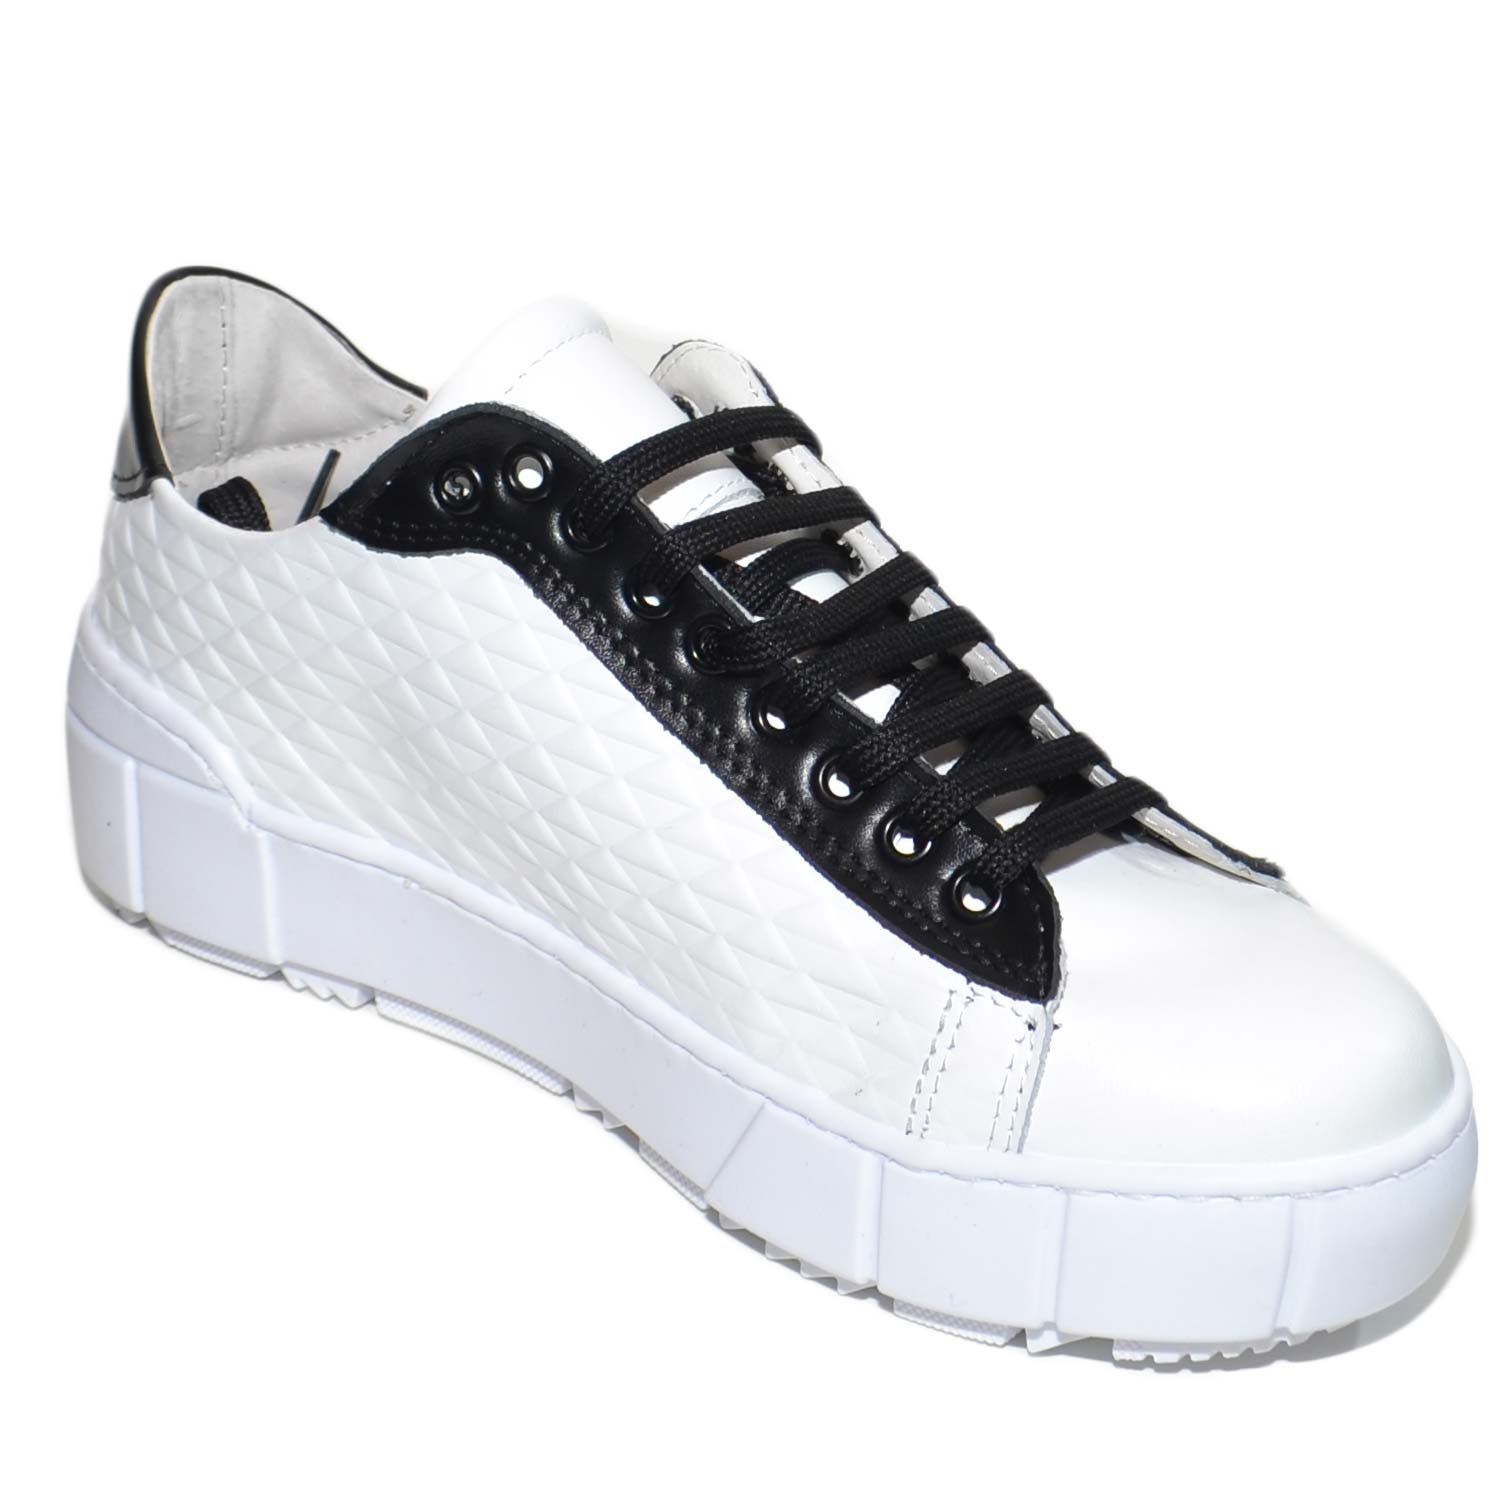 Sneakers bassa uomo moda stampa 3d su vera pelle bianchi con riporti e lacci neri fondo alto underground bianco handmade.